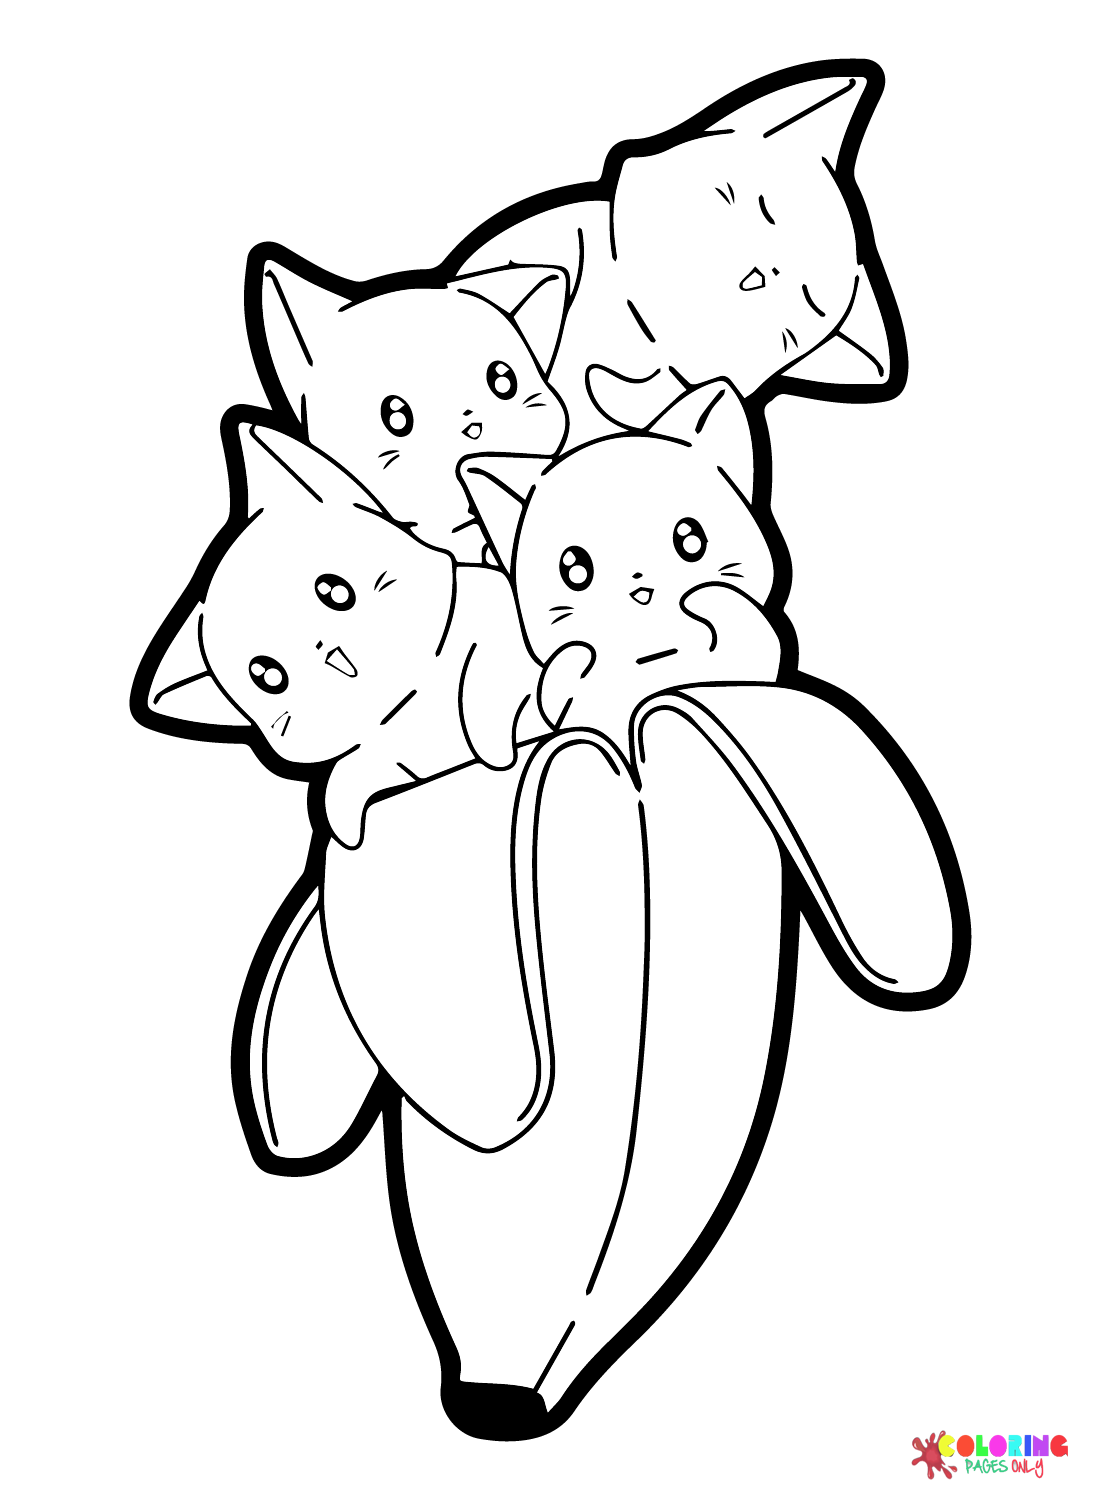 Kawaii Cats In Banana Cartoon Coloring Pages